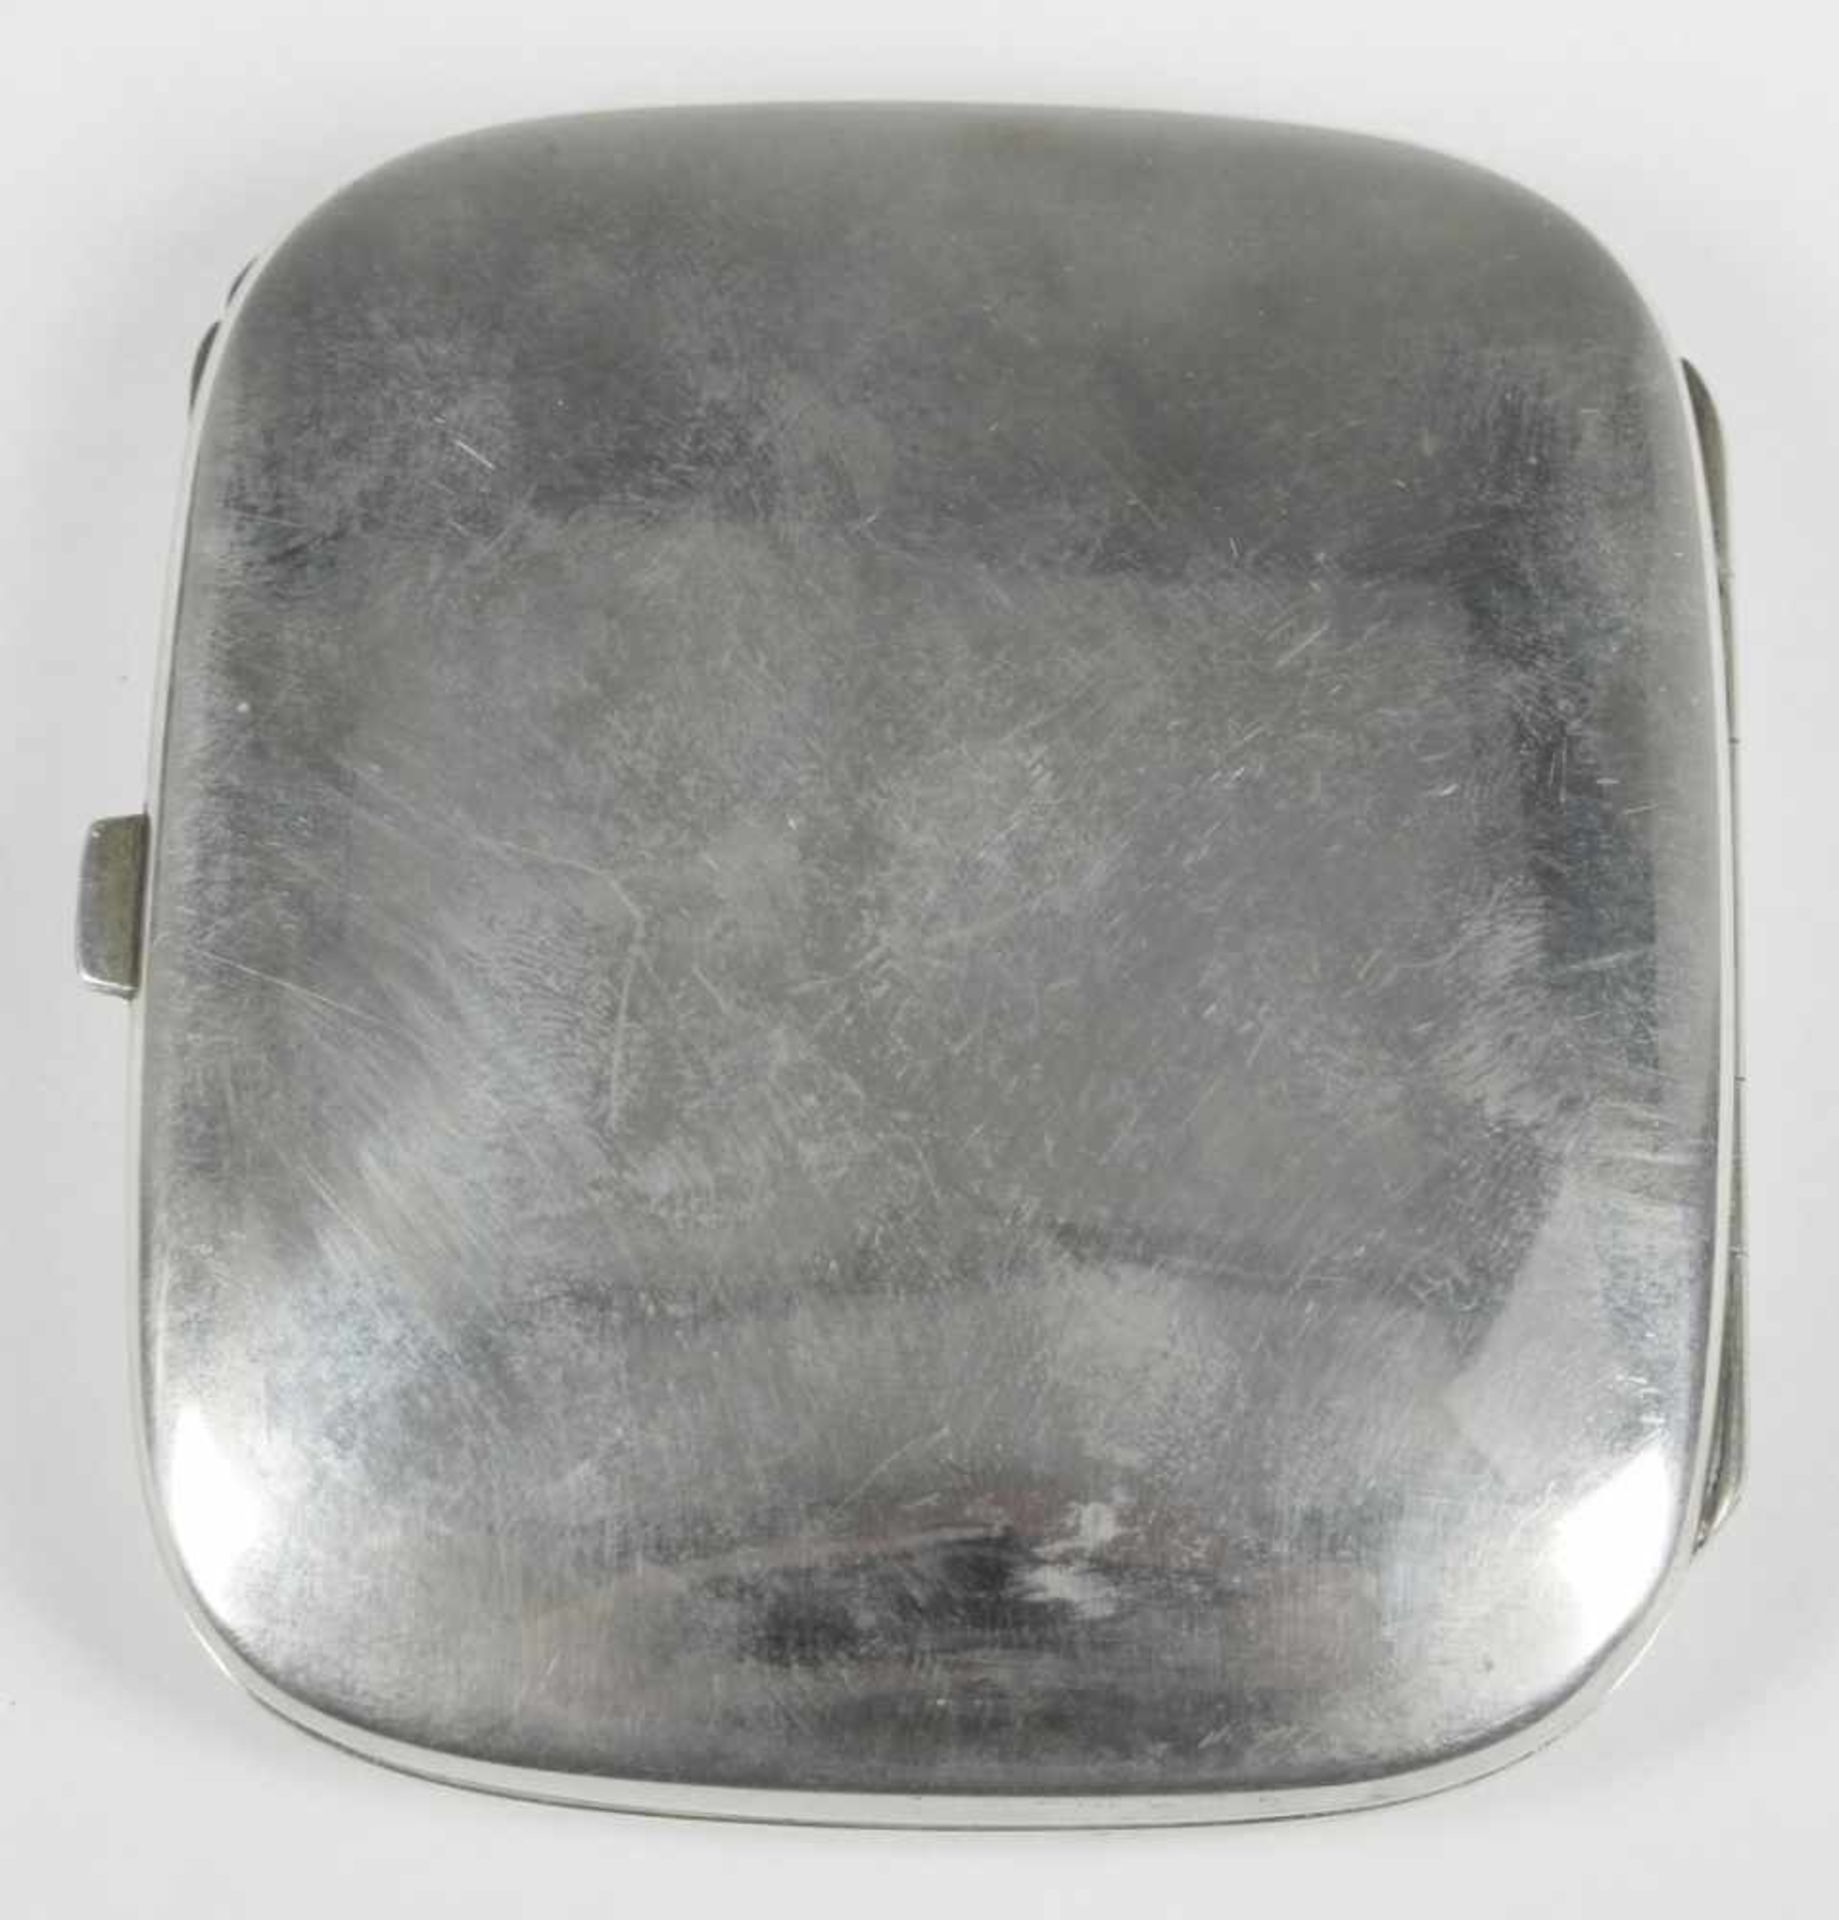 Zigaretten-Etui, 1. Hälfte 20. Jh., Silber 900, rechteckige Form, scharnierter Deckel,Schauseite mit - Bild 2 aus 4